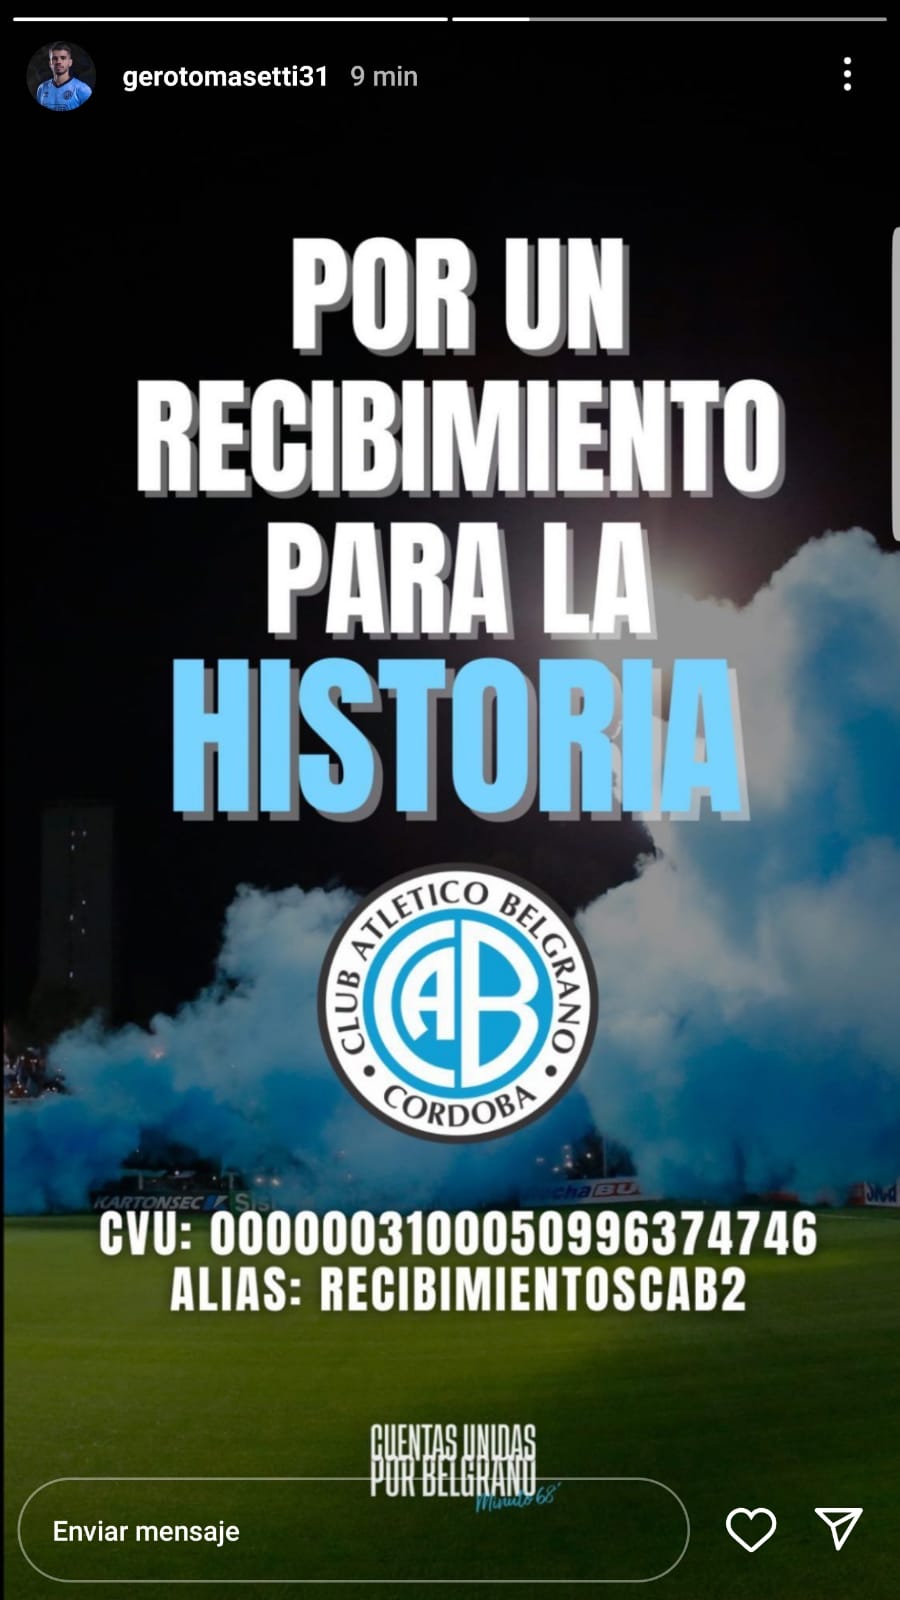 Belgrano prepara un recibimiento historico, que cuenta hasta con el apoyo de los jugadores | Canal Showsport